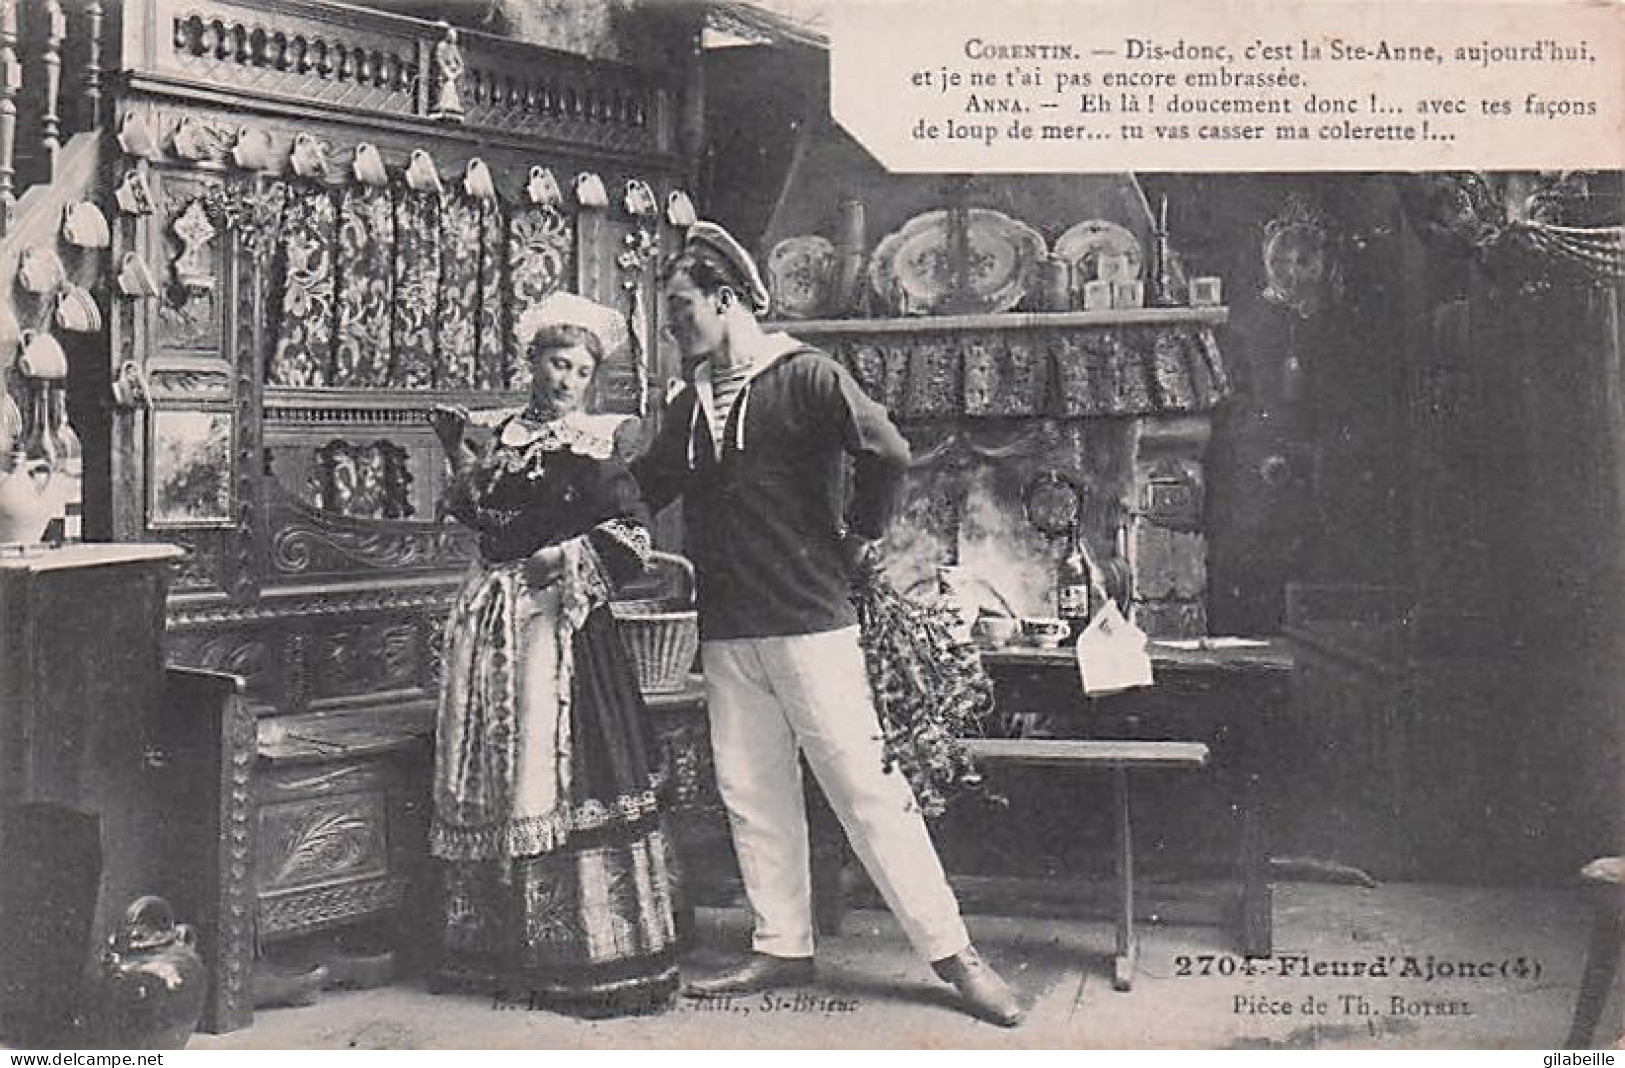 Theatre - Fleur d' Ajonc - Pièce de Th. Botrel - lot 8 cartes - 1909